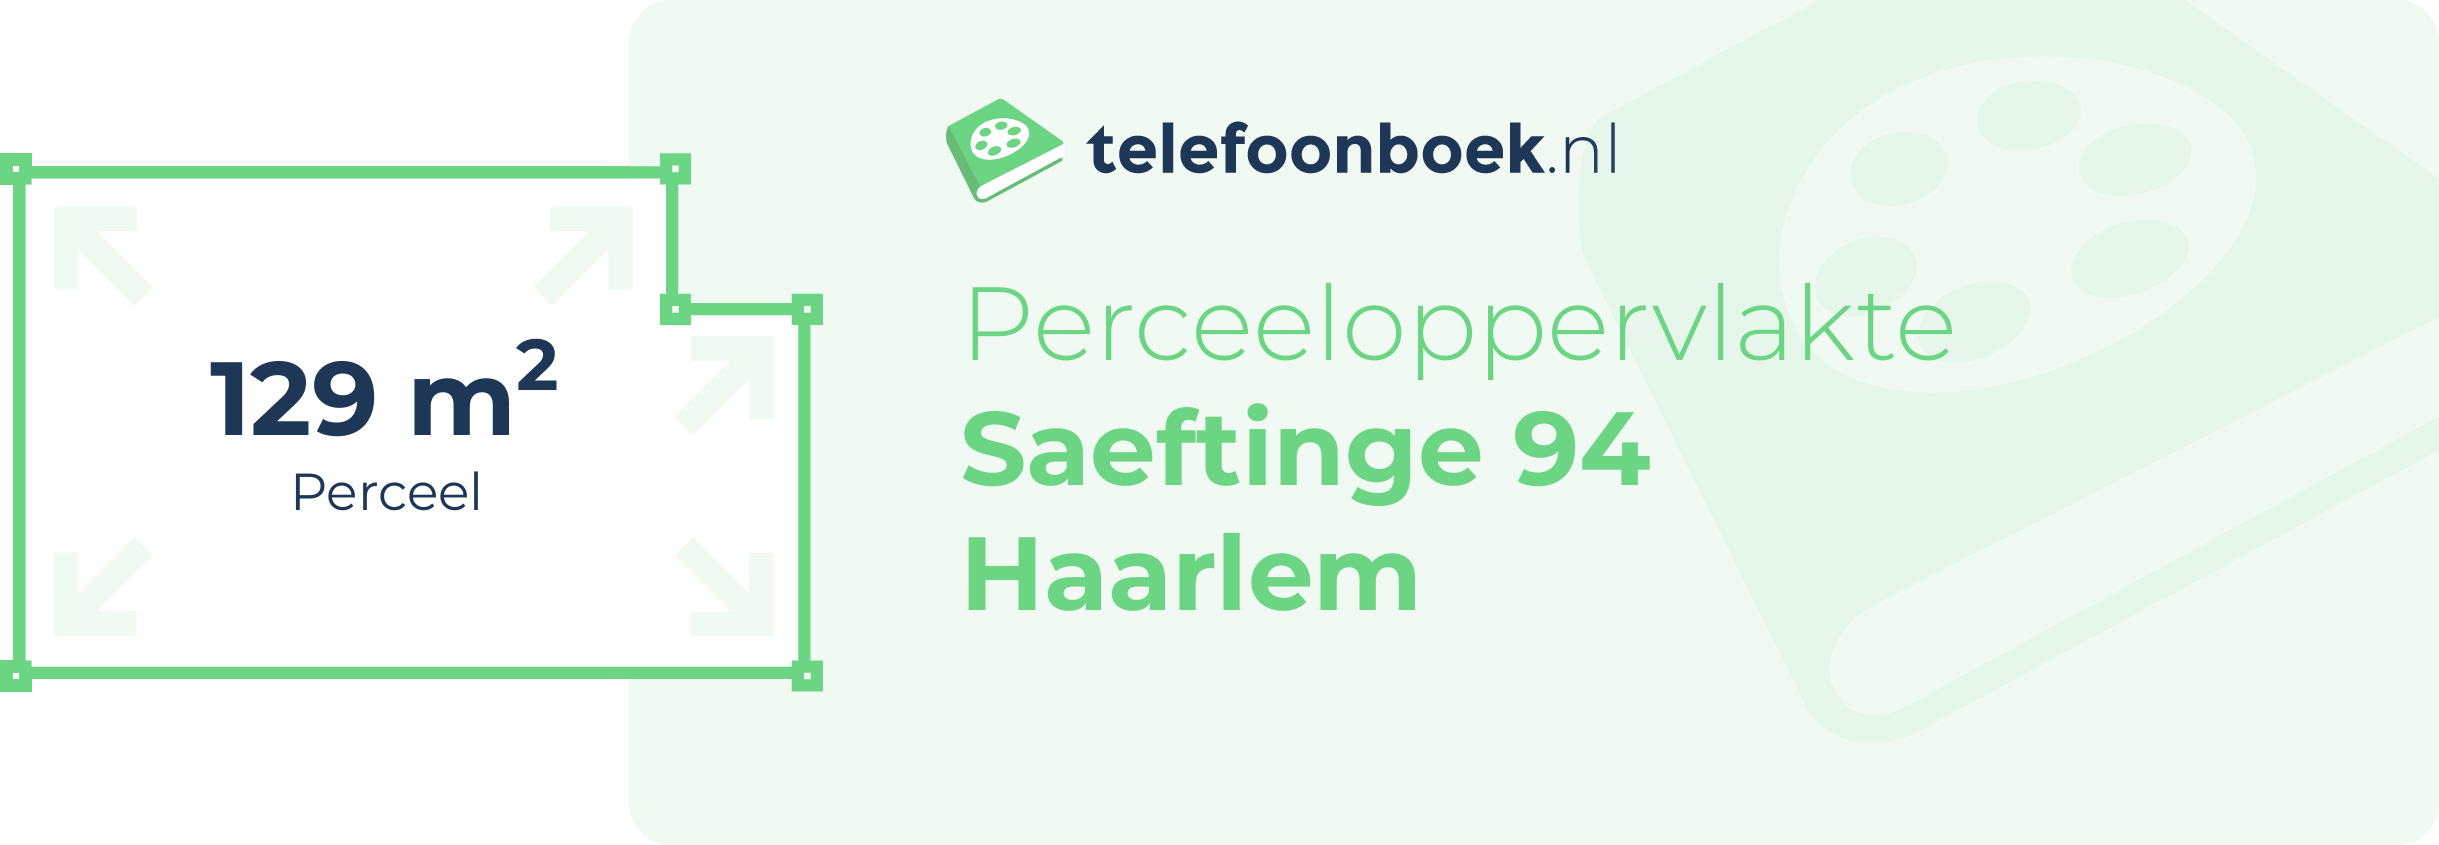 Perceeloppervlakte Saeftinge 94 Haarlem